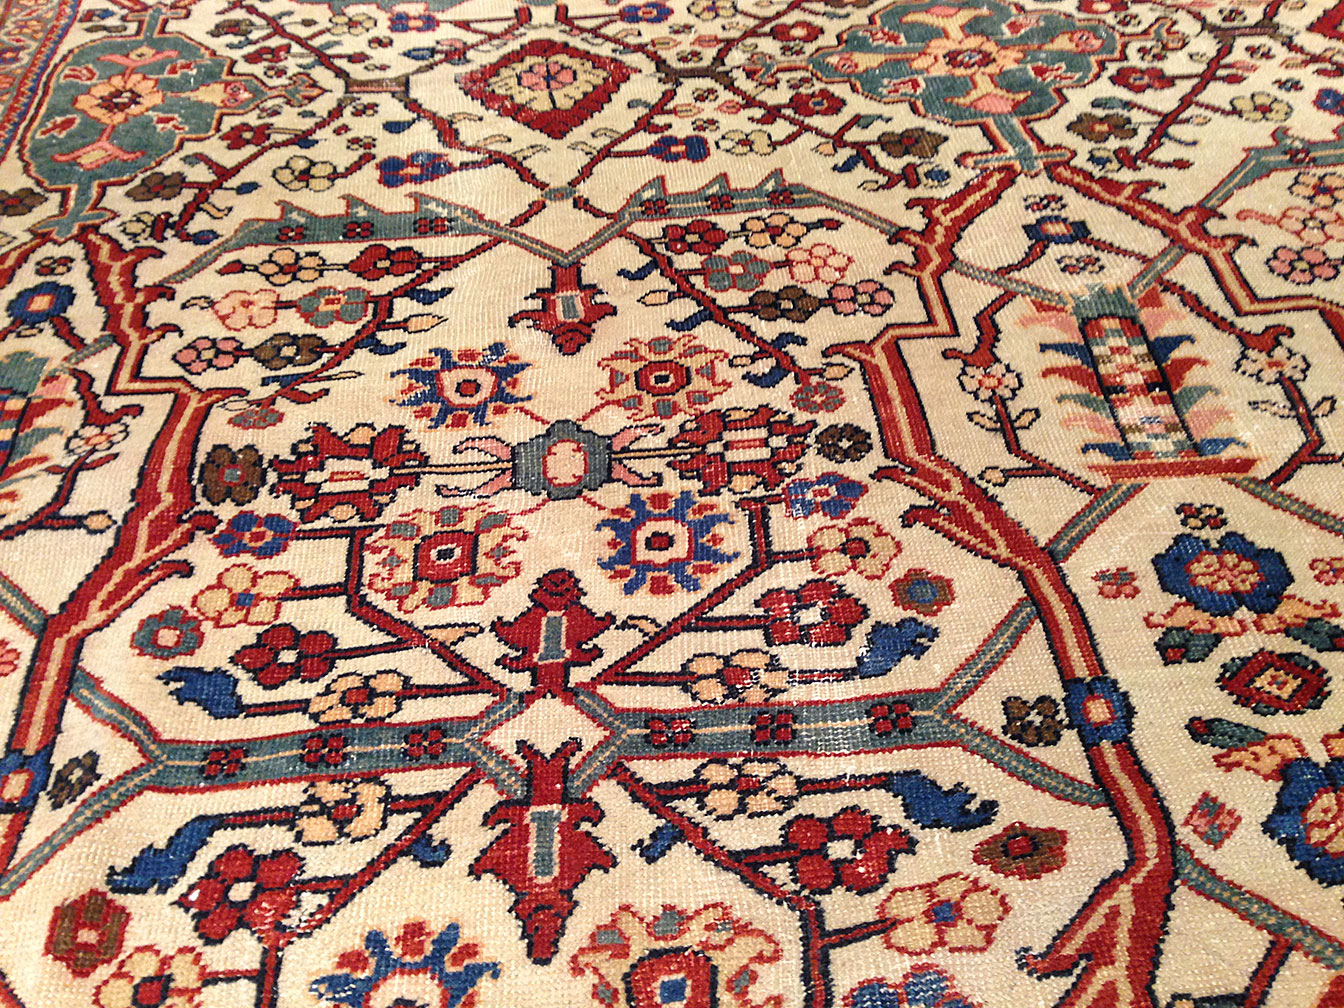 Antique sultan abad Carpet - # 9466